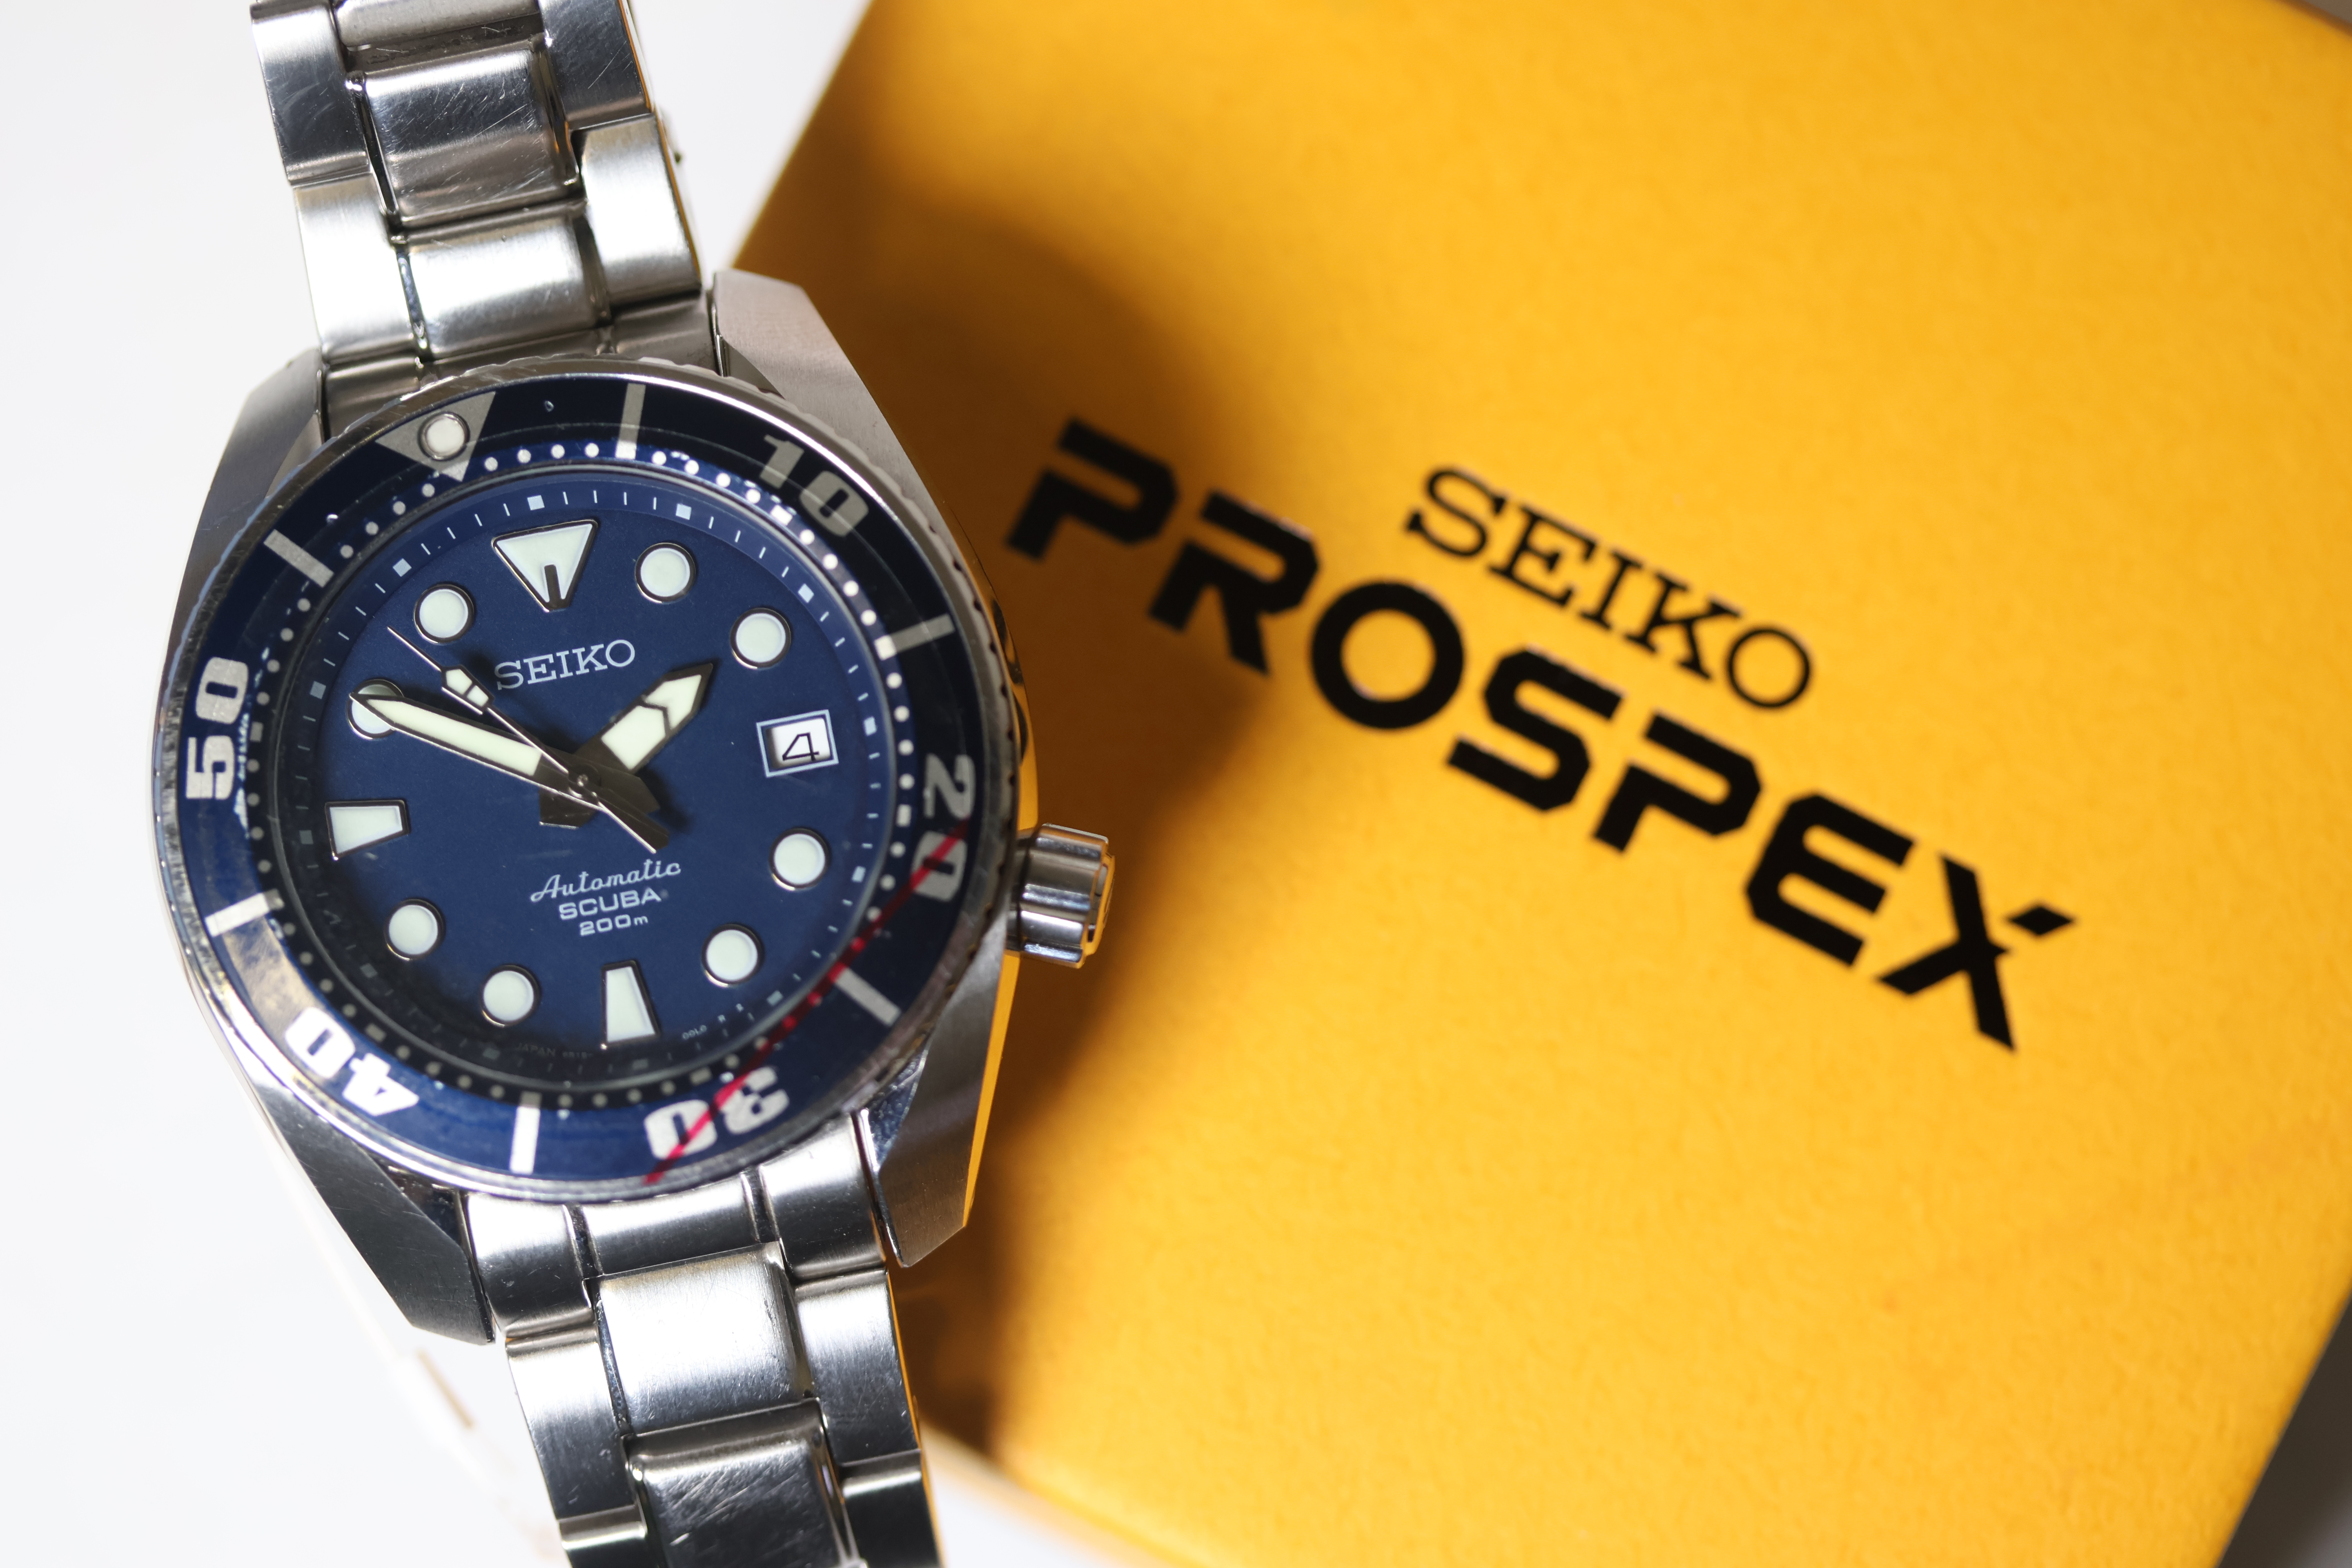 Seiko Prospex 'Blumo' Date Automatic Ref. SBDC003 W/BOX